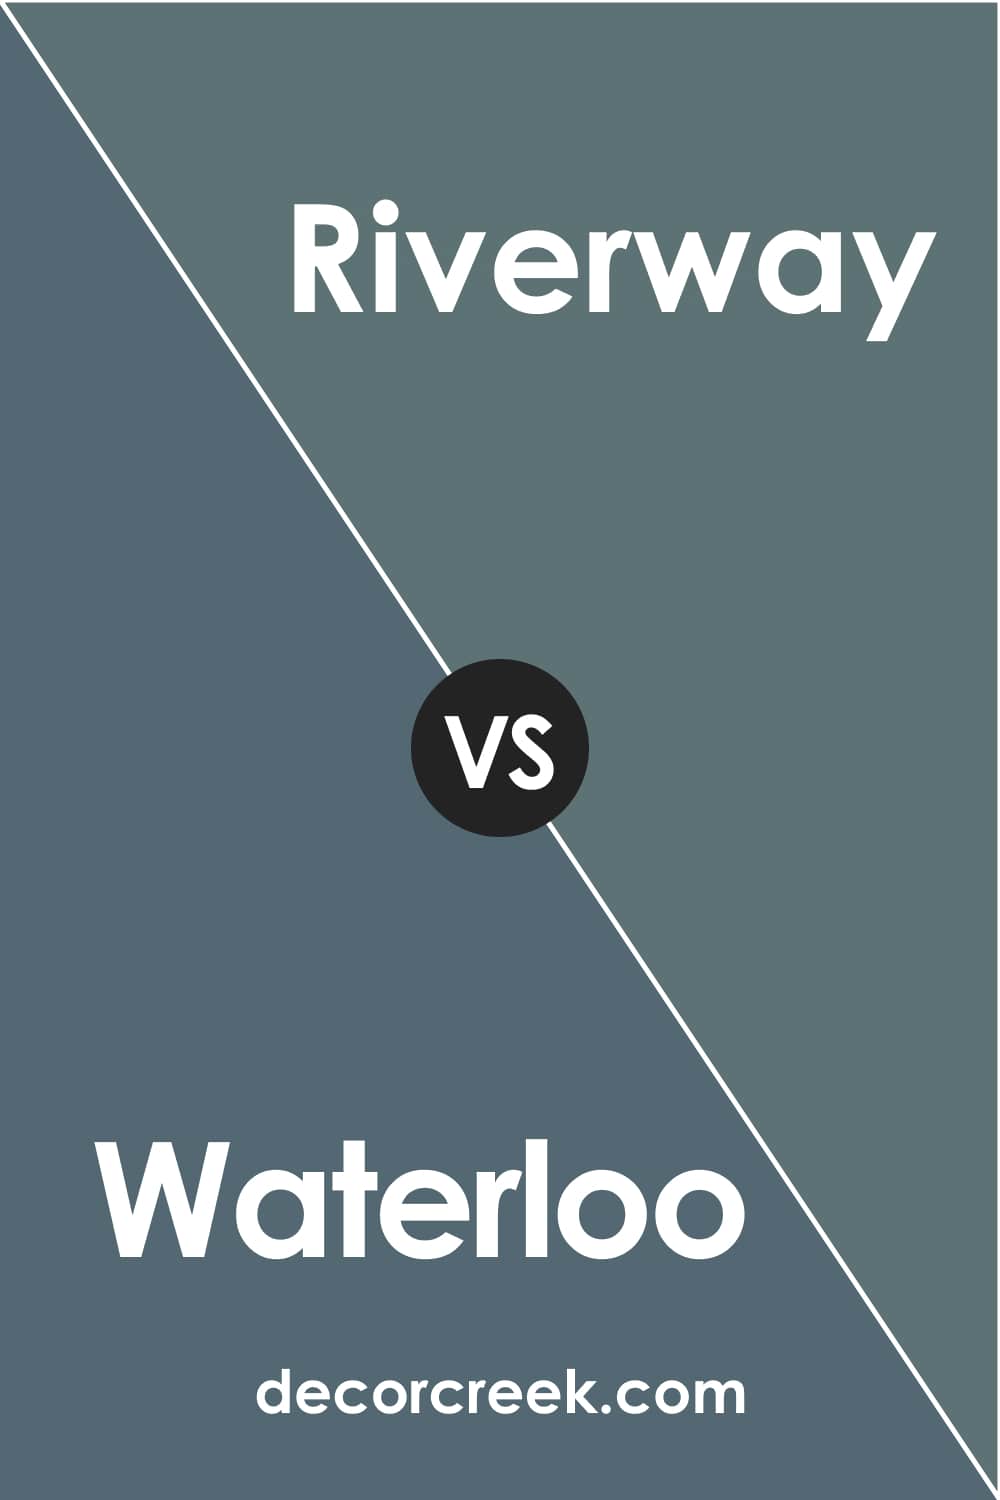 Waterloo vs Riverway